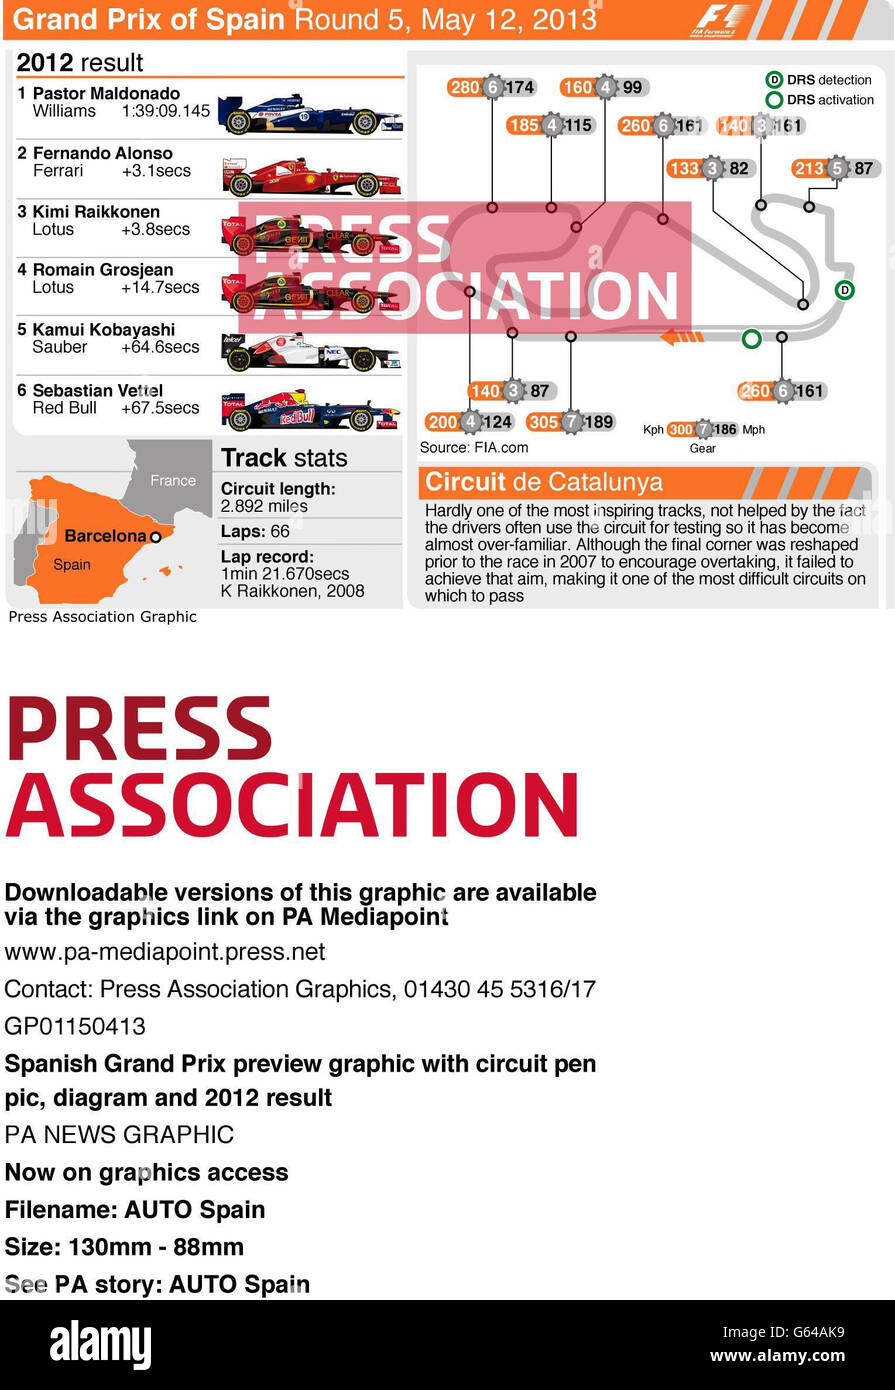 Aperçu du Grand Prix d'Espagne avec stylo de circuit pic, statistiques de piste, diagramme et résultat 2012 Banque D'Images